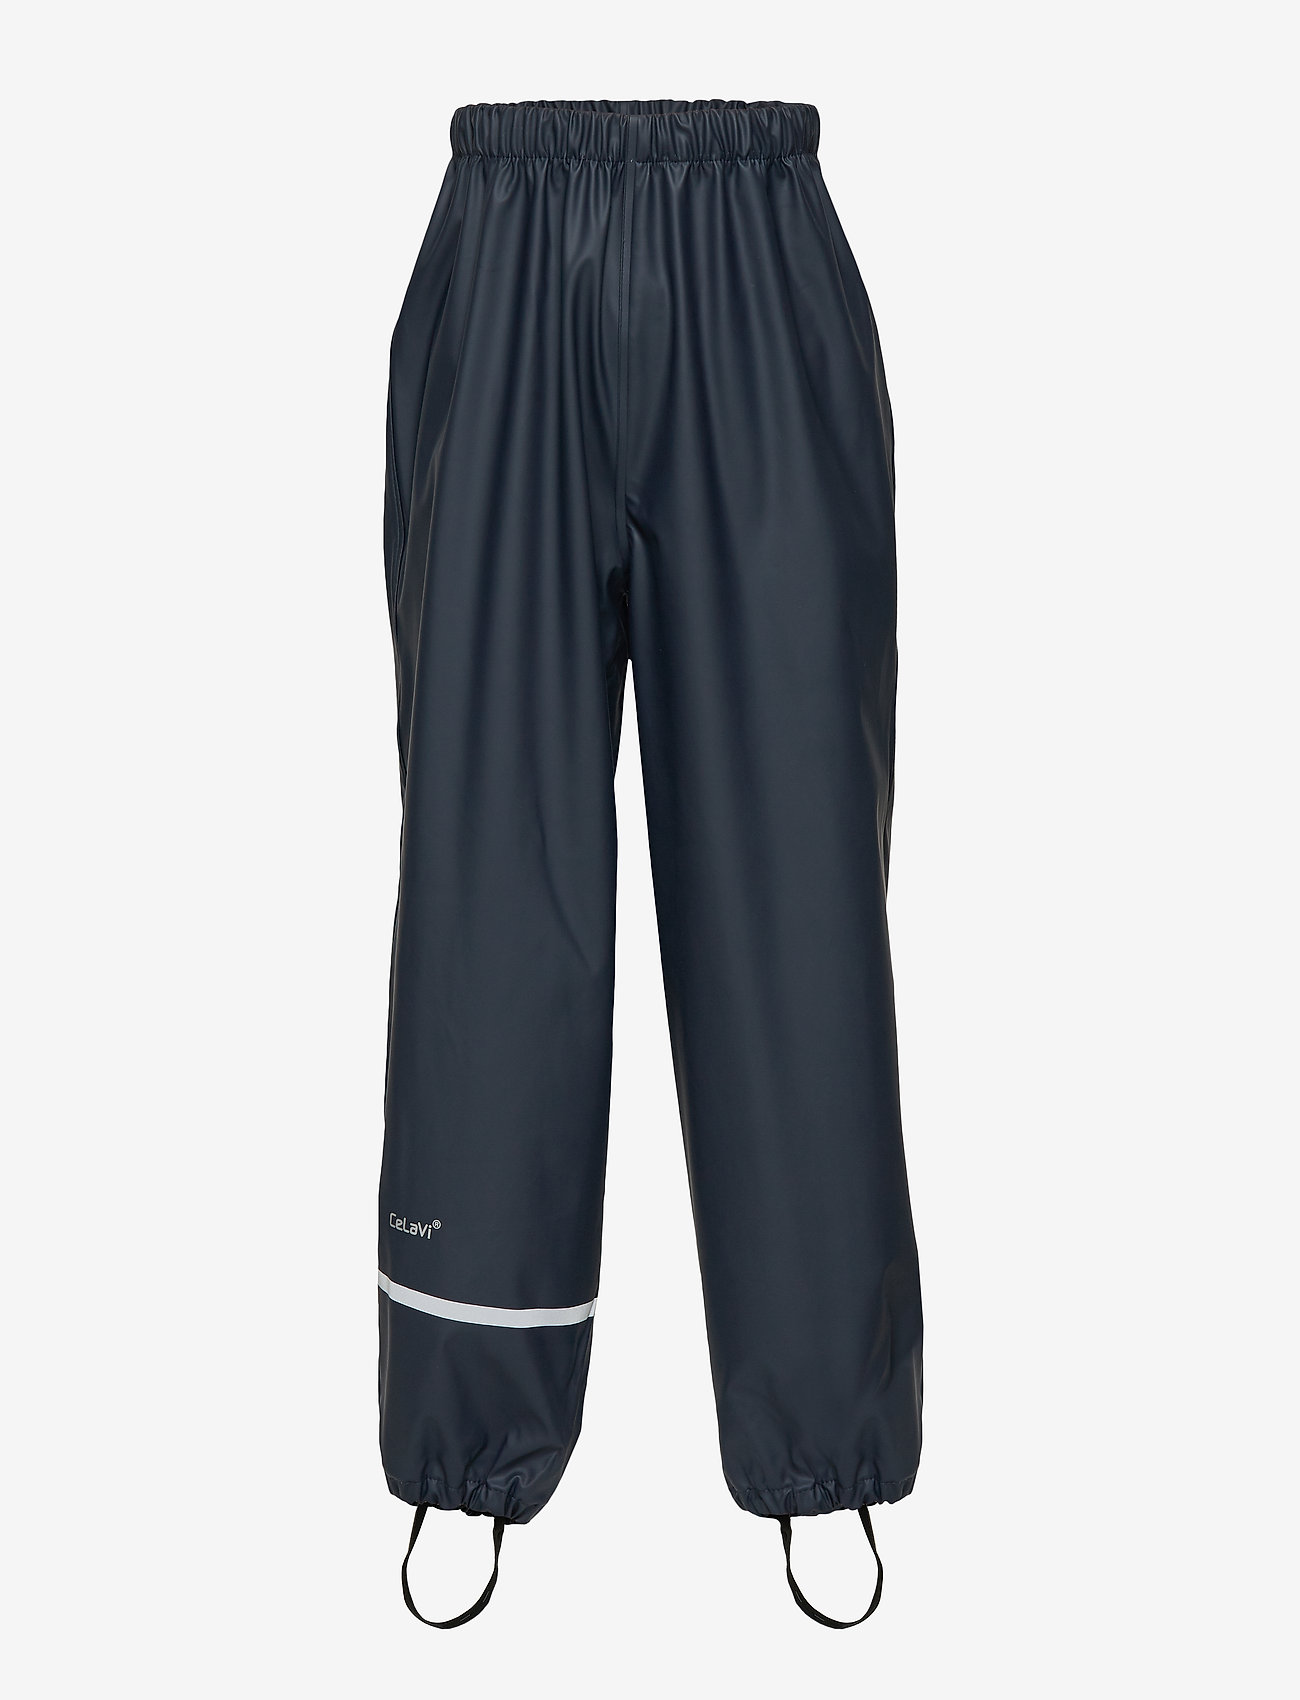 CeLaVi - Rainwear pants - solid - lowest prices - dark navy - 0